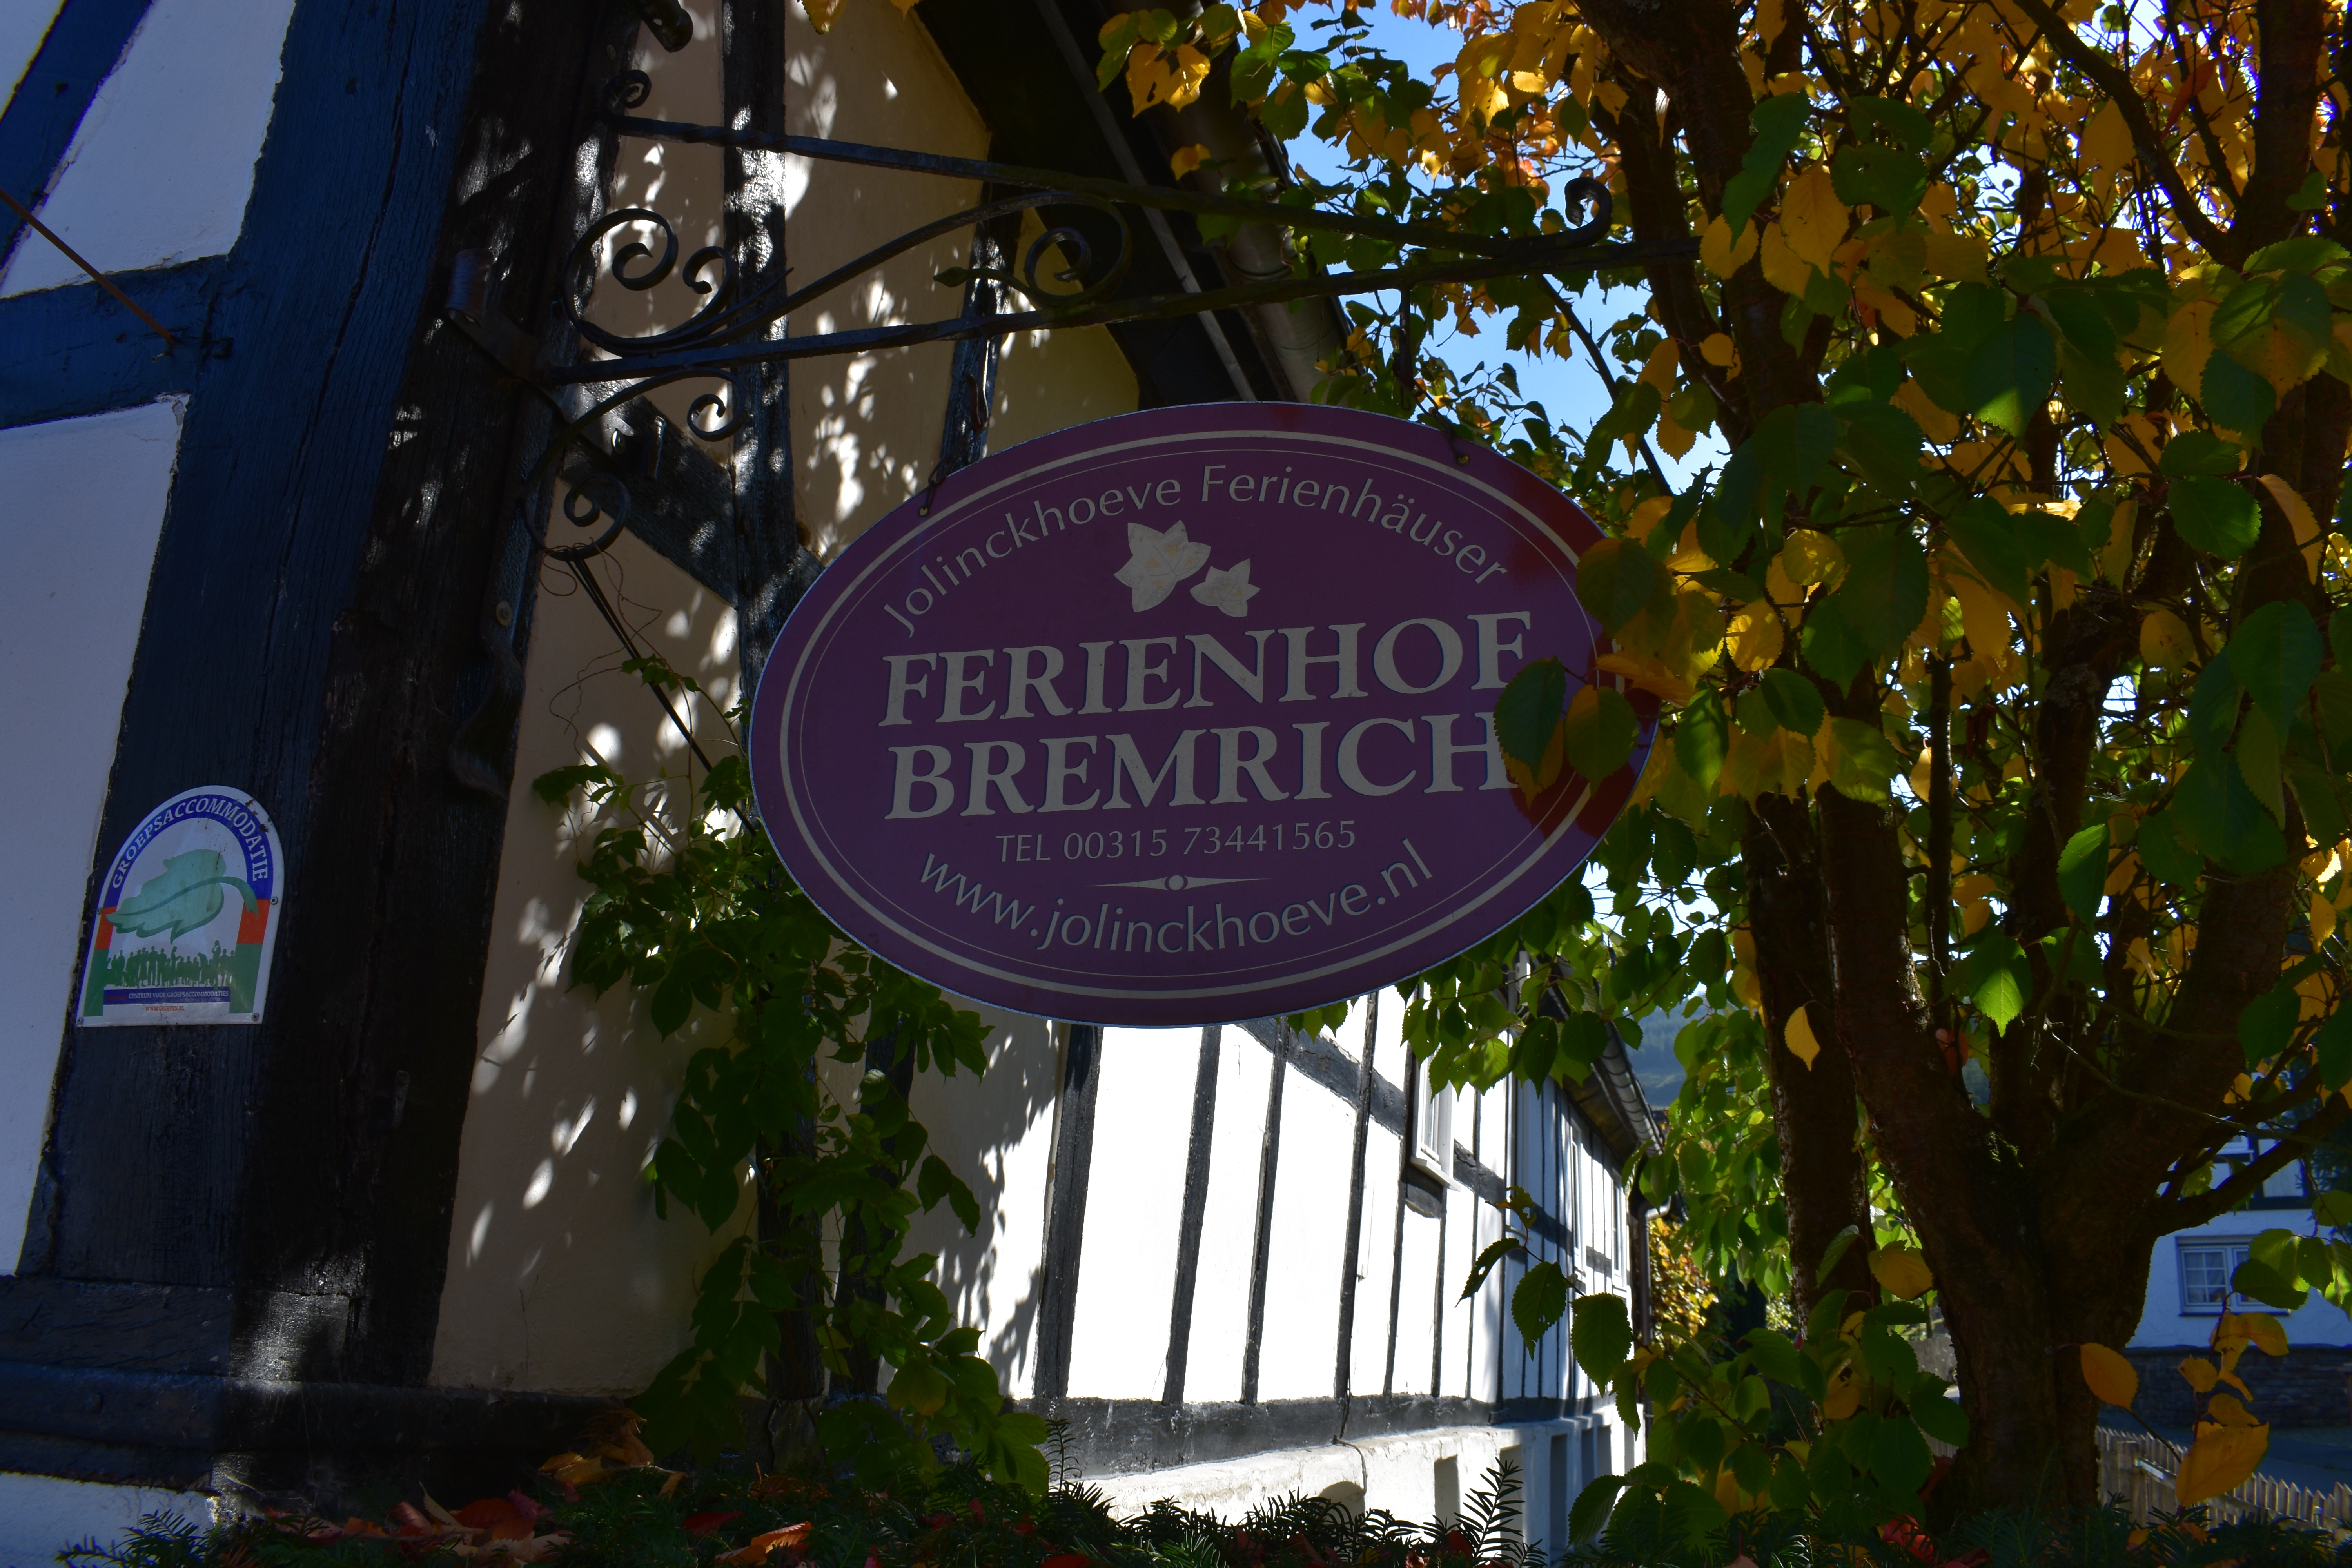 Ferienhof Bremrich